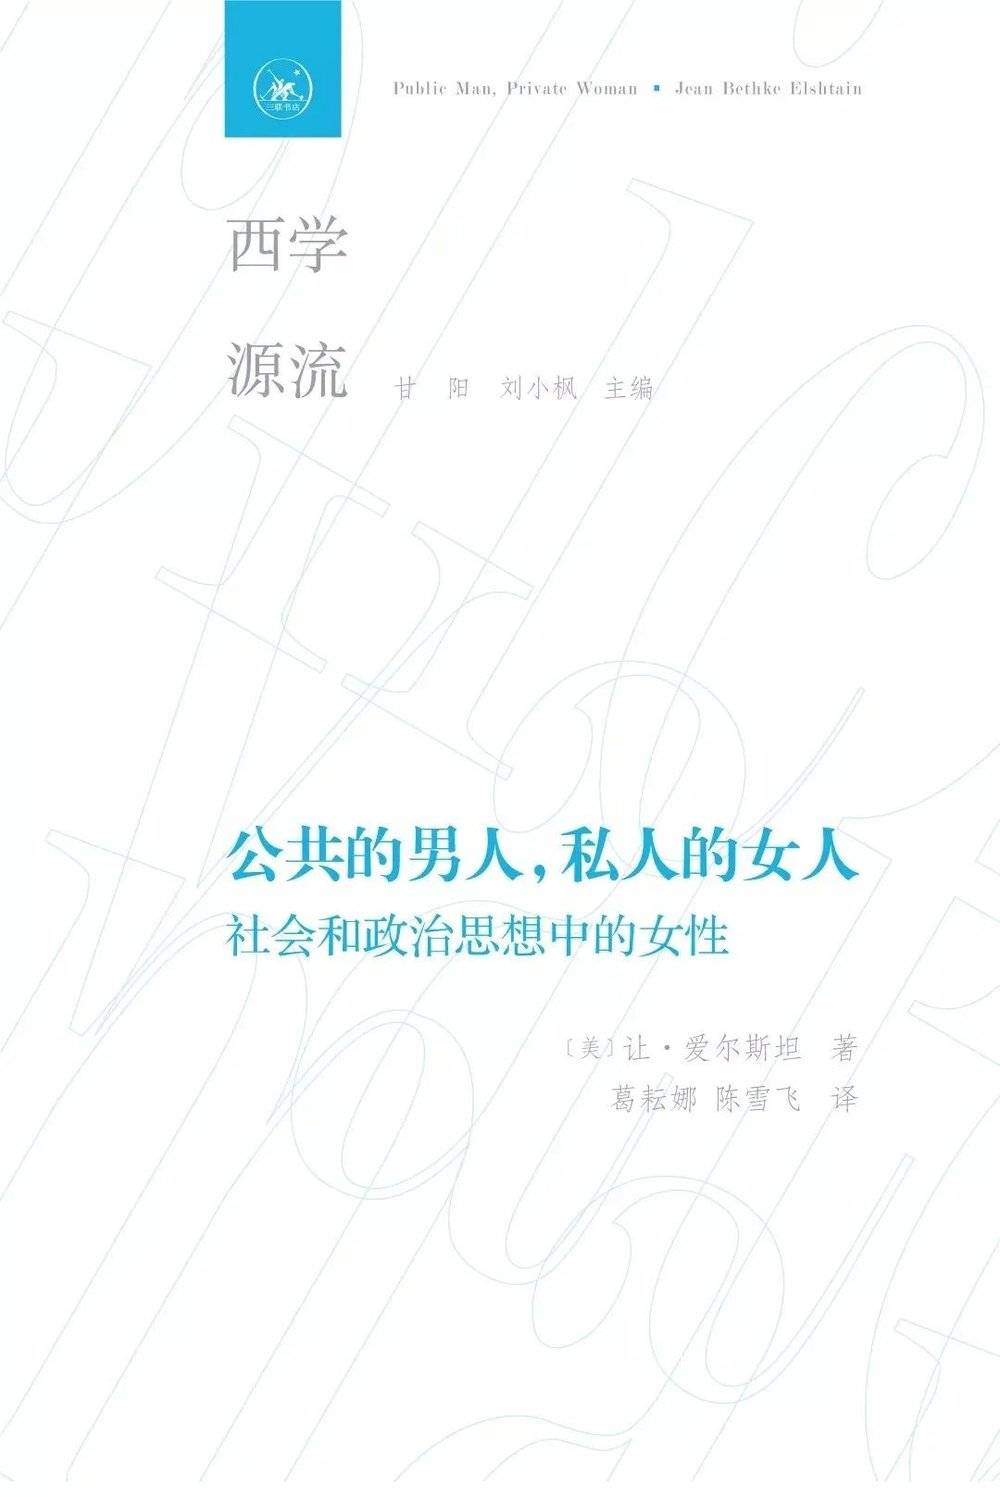  《公共的男人，私人的女人：社会和政治思想中的女性》中文译本封面<br>